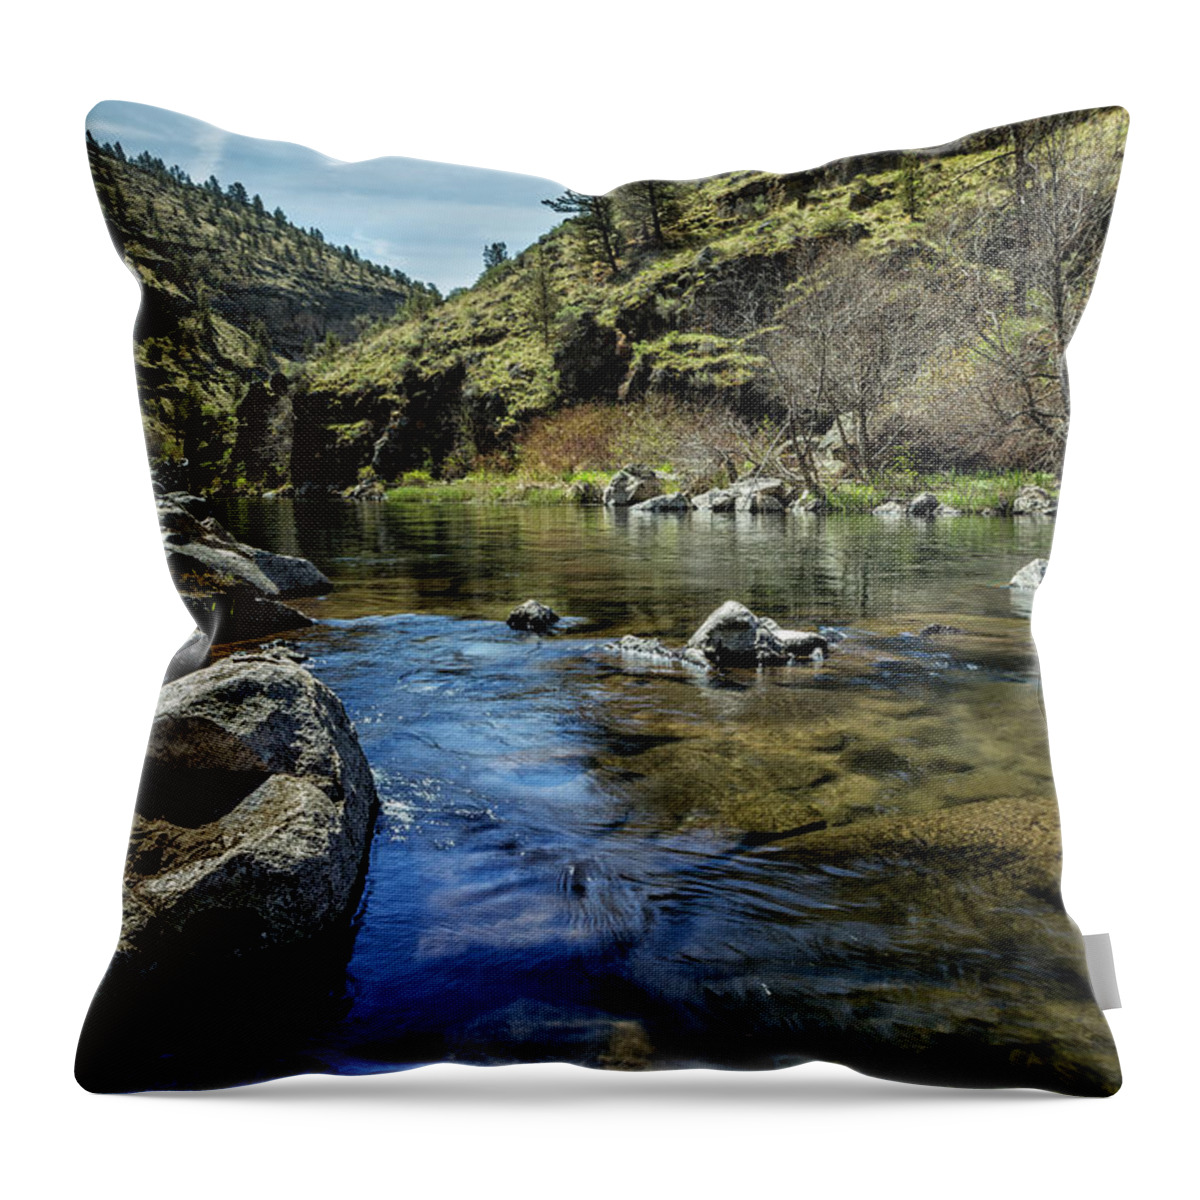 Steelhead Falls Throw Pillow featuring the photograph Deschutes River below Steelhead Falls by Belinda Greb